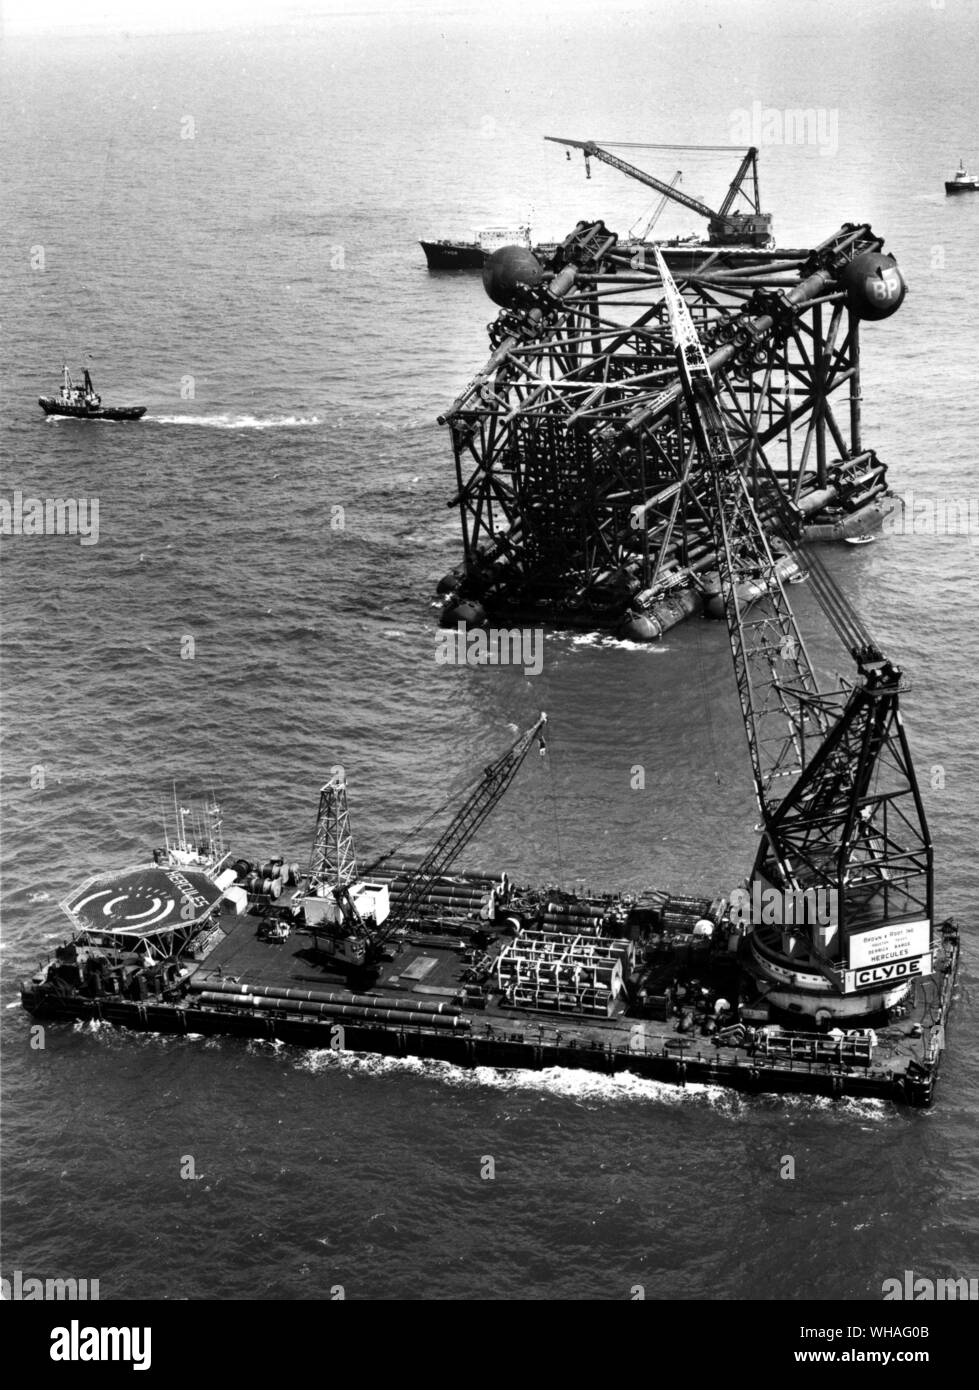 Jacke Abschnitt der Produktion Plattform 'Graythorp ich 'vor Ort auf der BP 40 Ölfeldern in der Nordsee, vor dem Absenken auf dem Meeresboden, mit Kran Barge 'Hercules' im Vordergrund. Juli 1974 Stockfoto